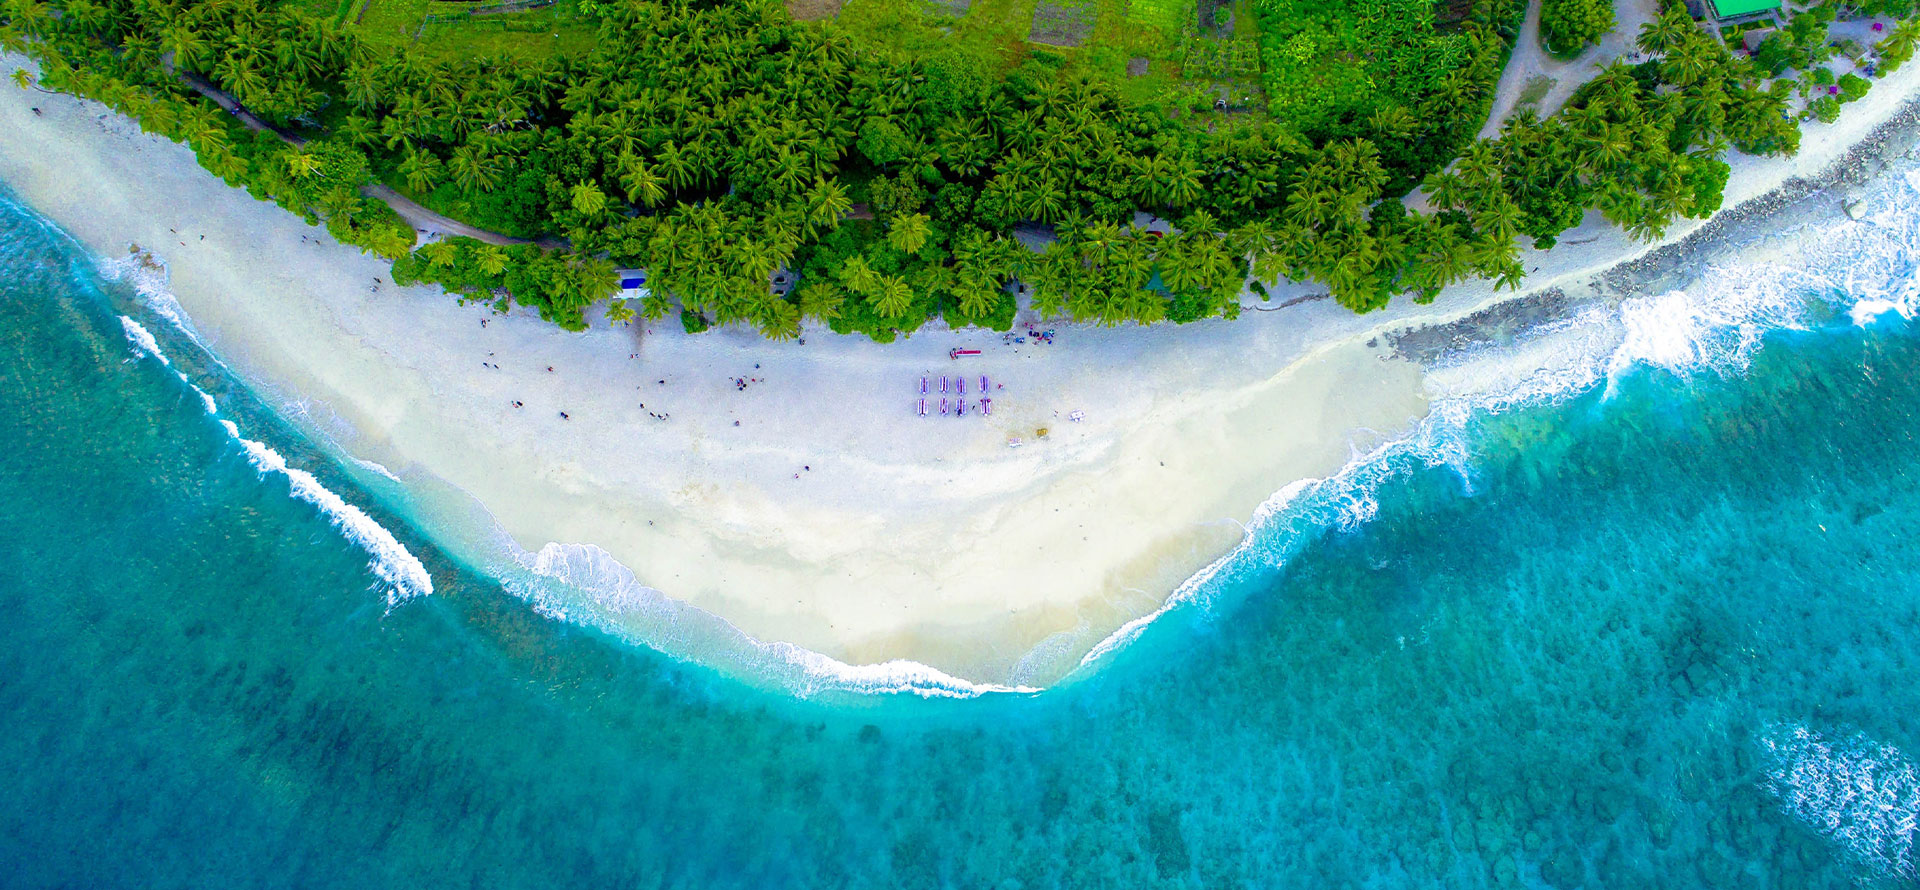 Beach in Mauritius.